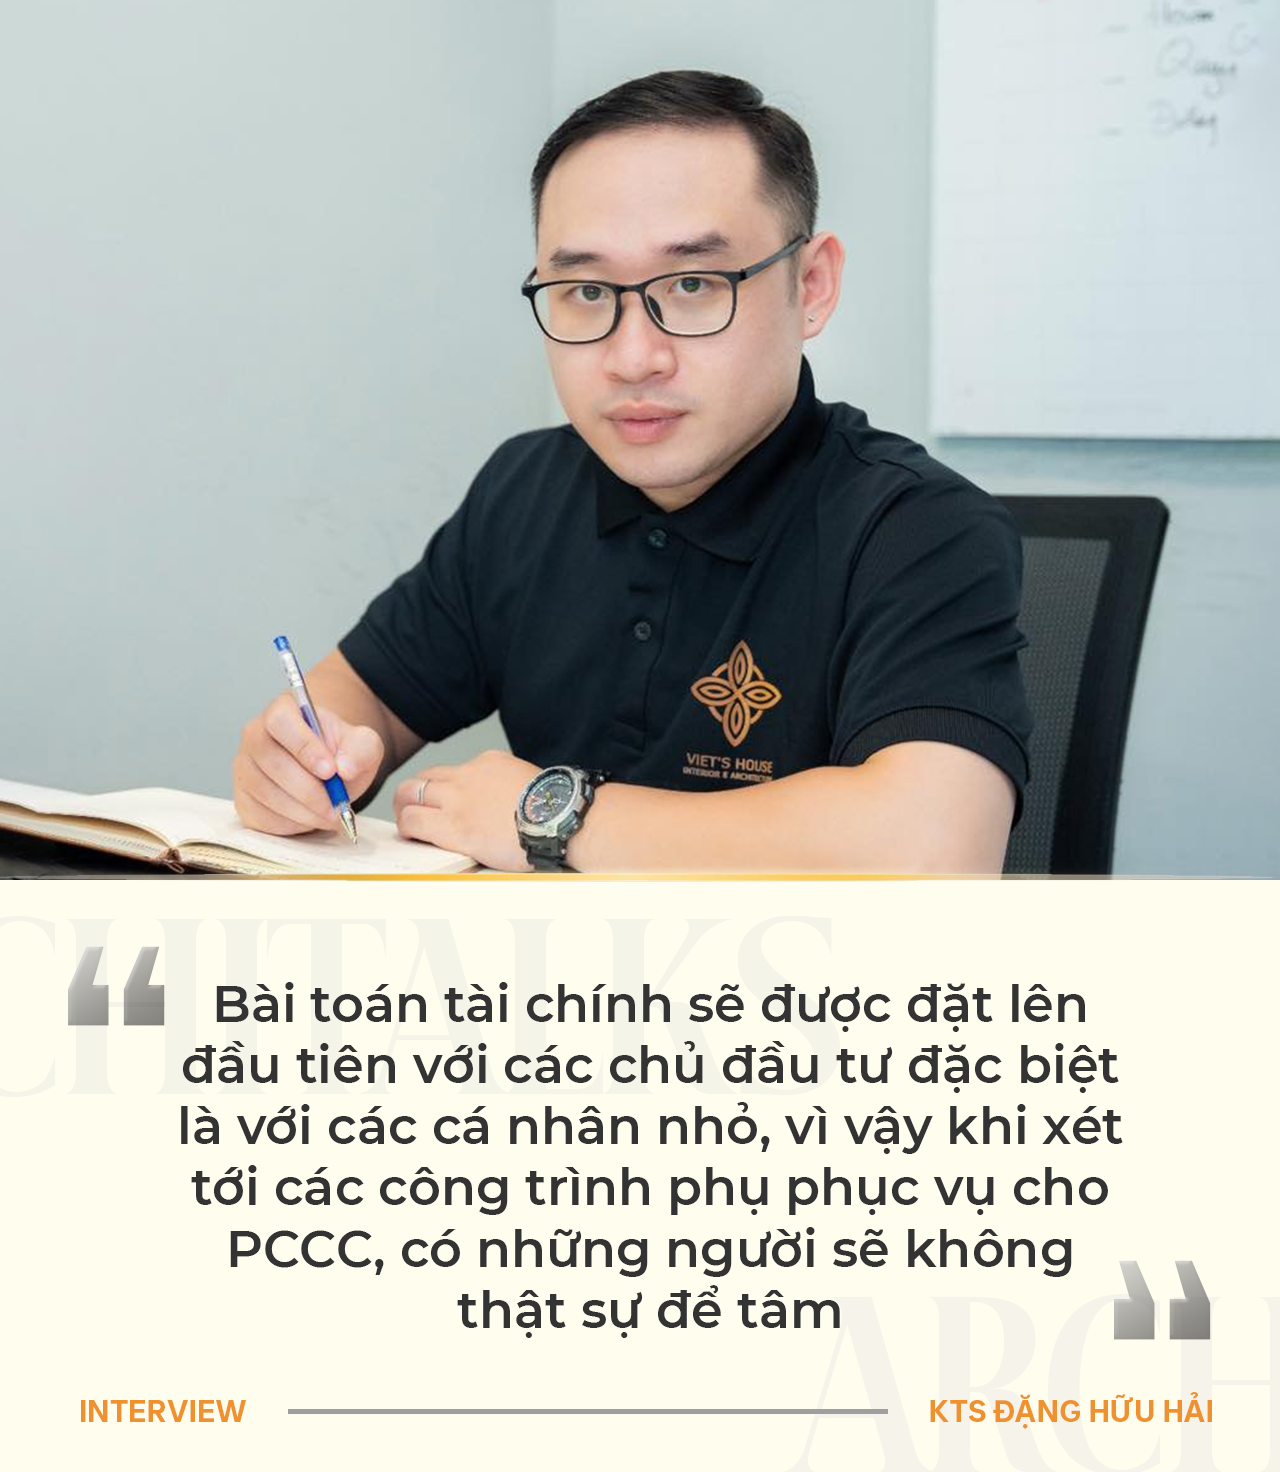 KTS Đặng Hữu Hải: PCCC trong một công trình là vô cùng quan trọng nhưng chưa nhận được sự quan tâm và đầu tư đúng mức - Ảnh 4.